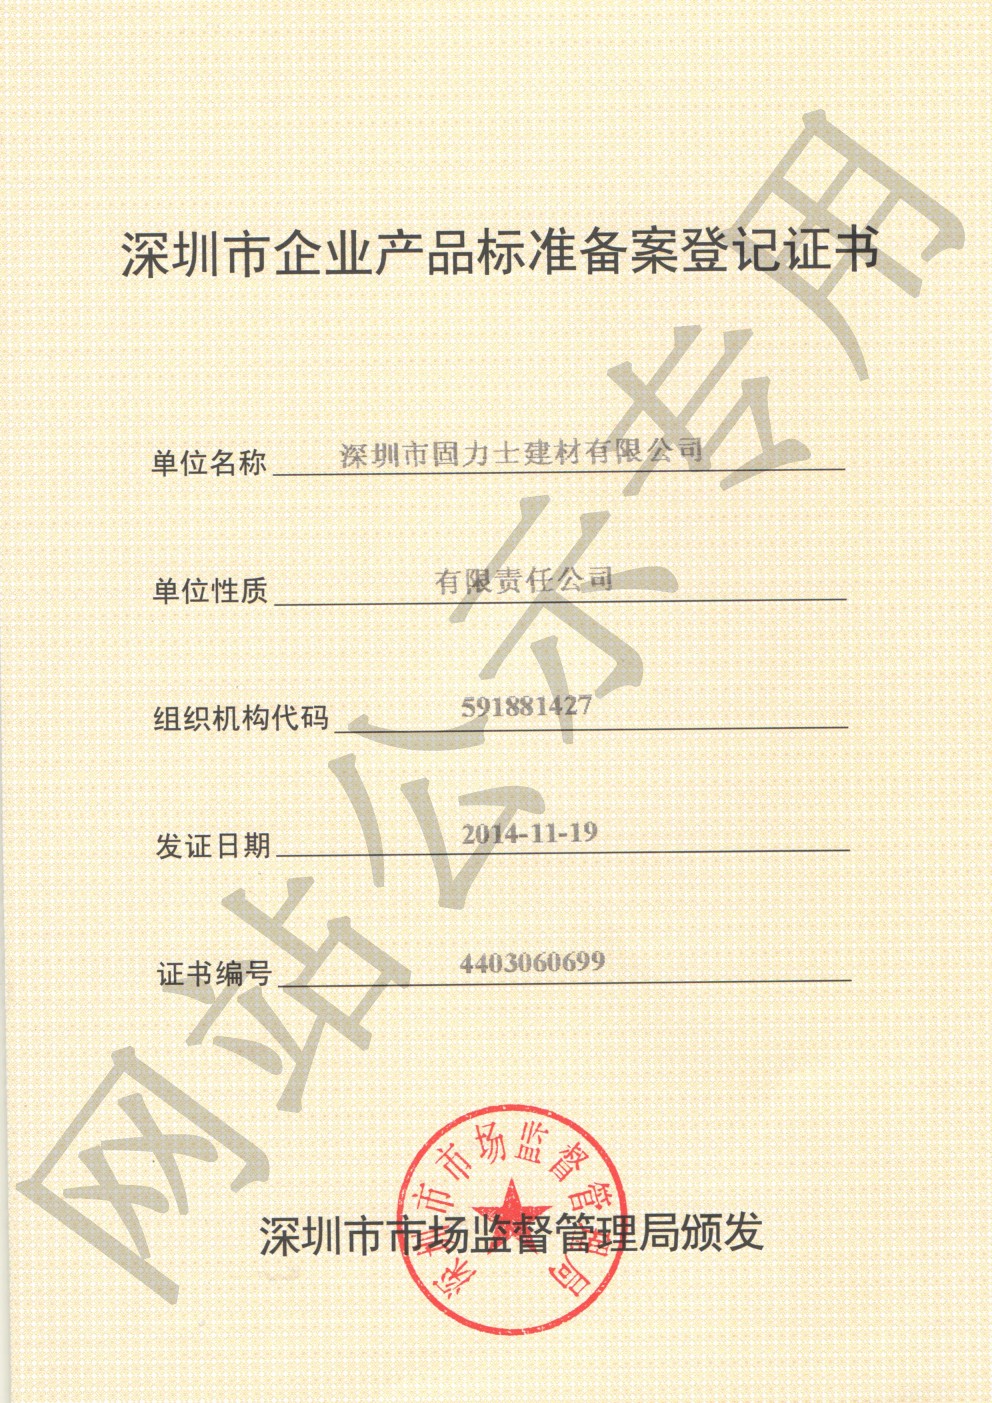 集贤企业产品标准登记证书